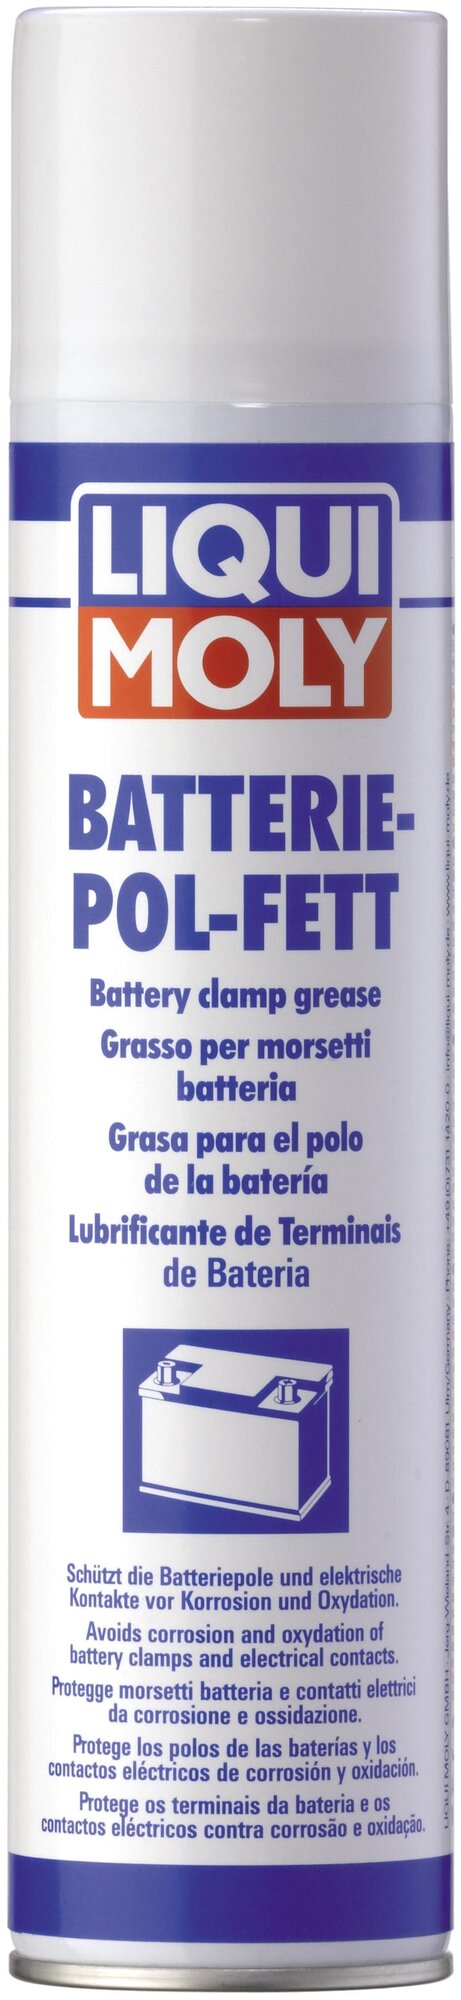 Смазка для электроконтактов Batterie-Pol-Fett (0.3 л)